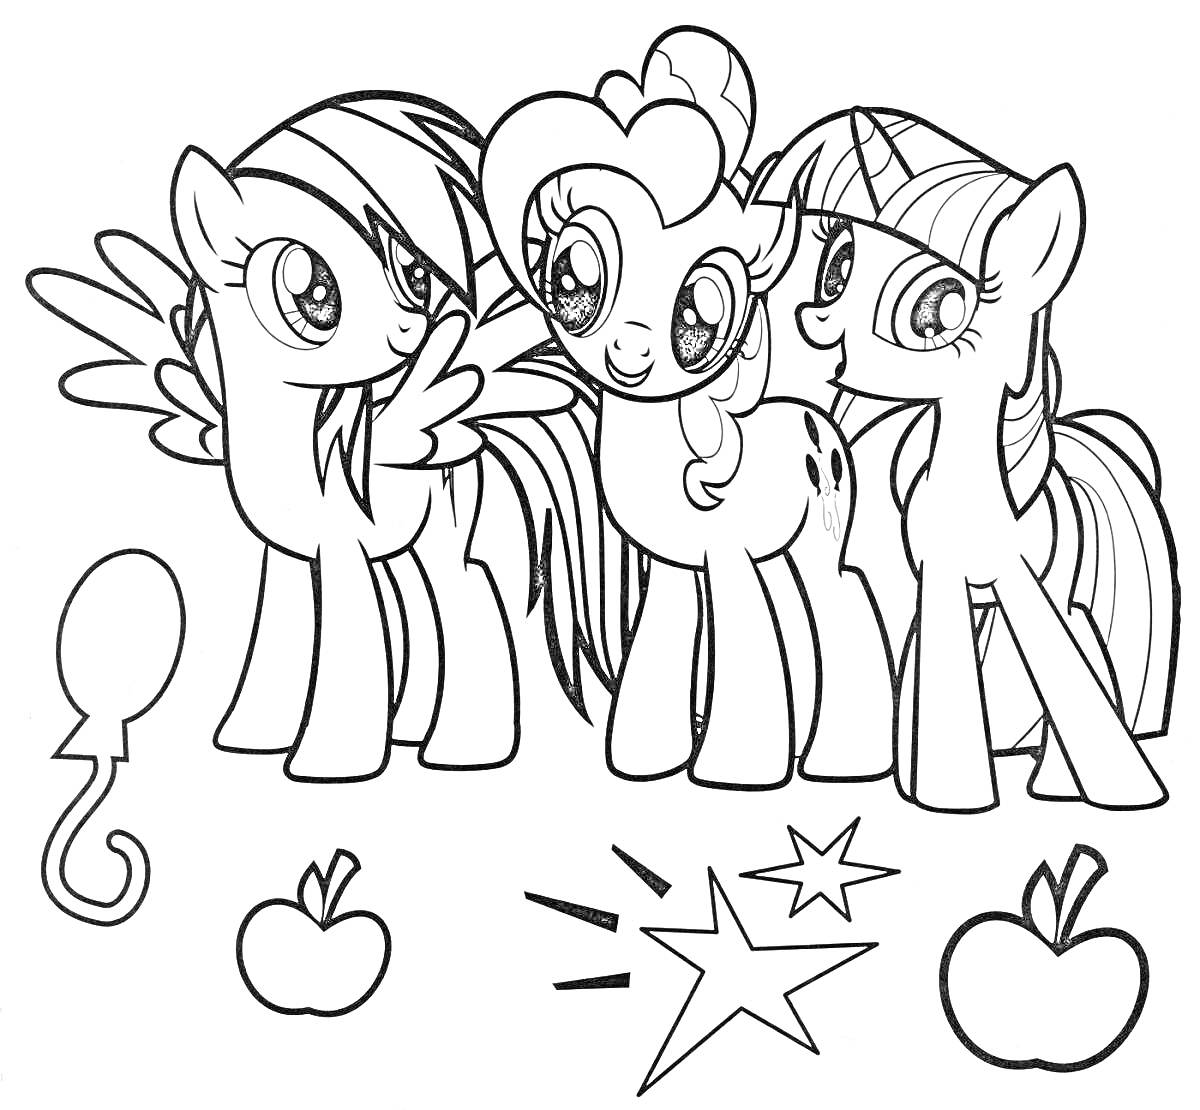 Раскраска Три пони с шариком, яблоками и звездами